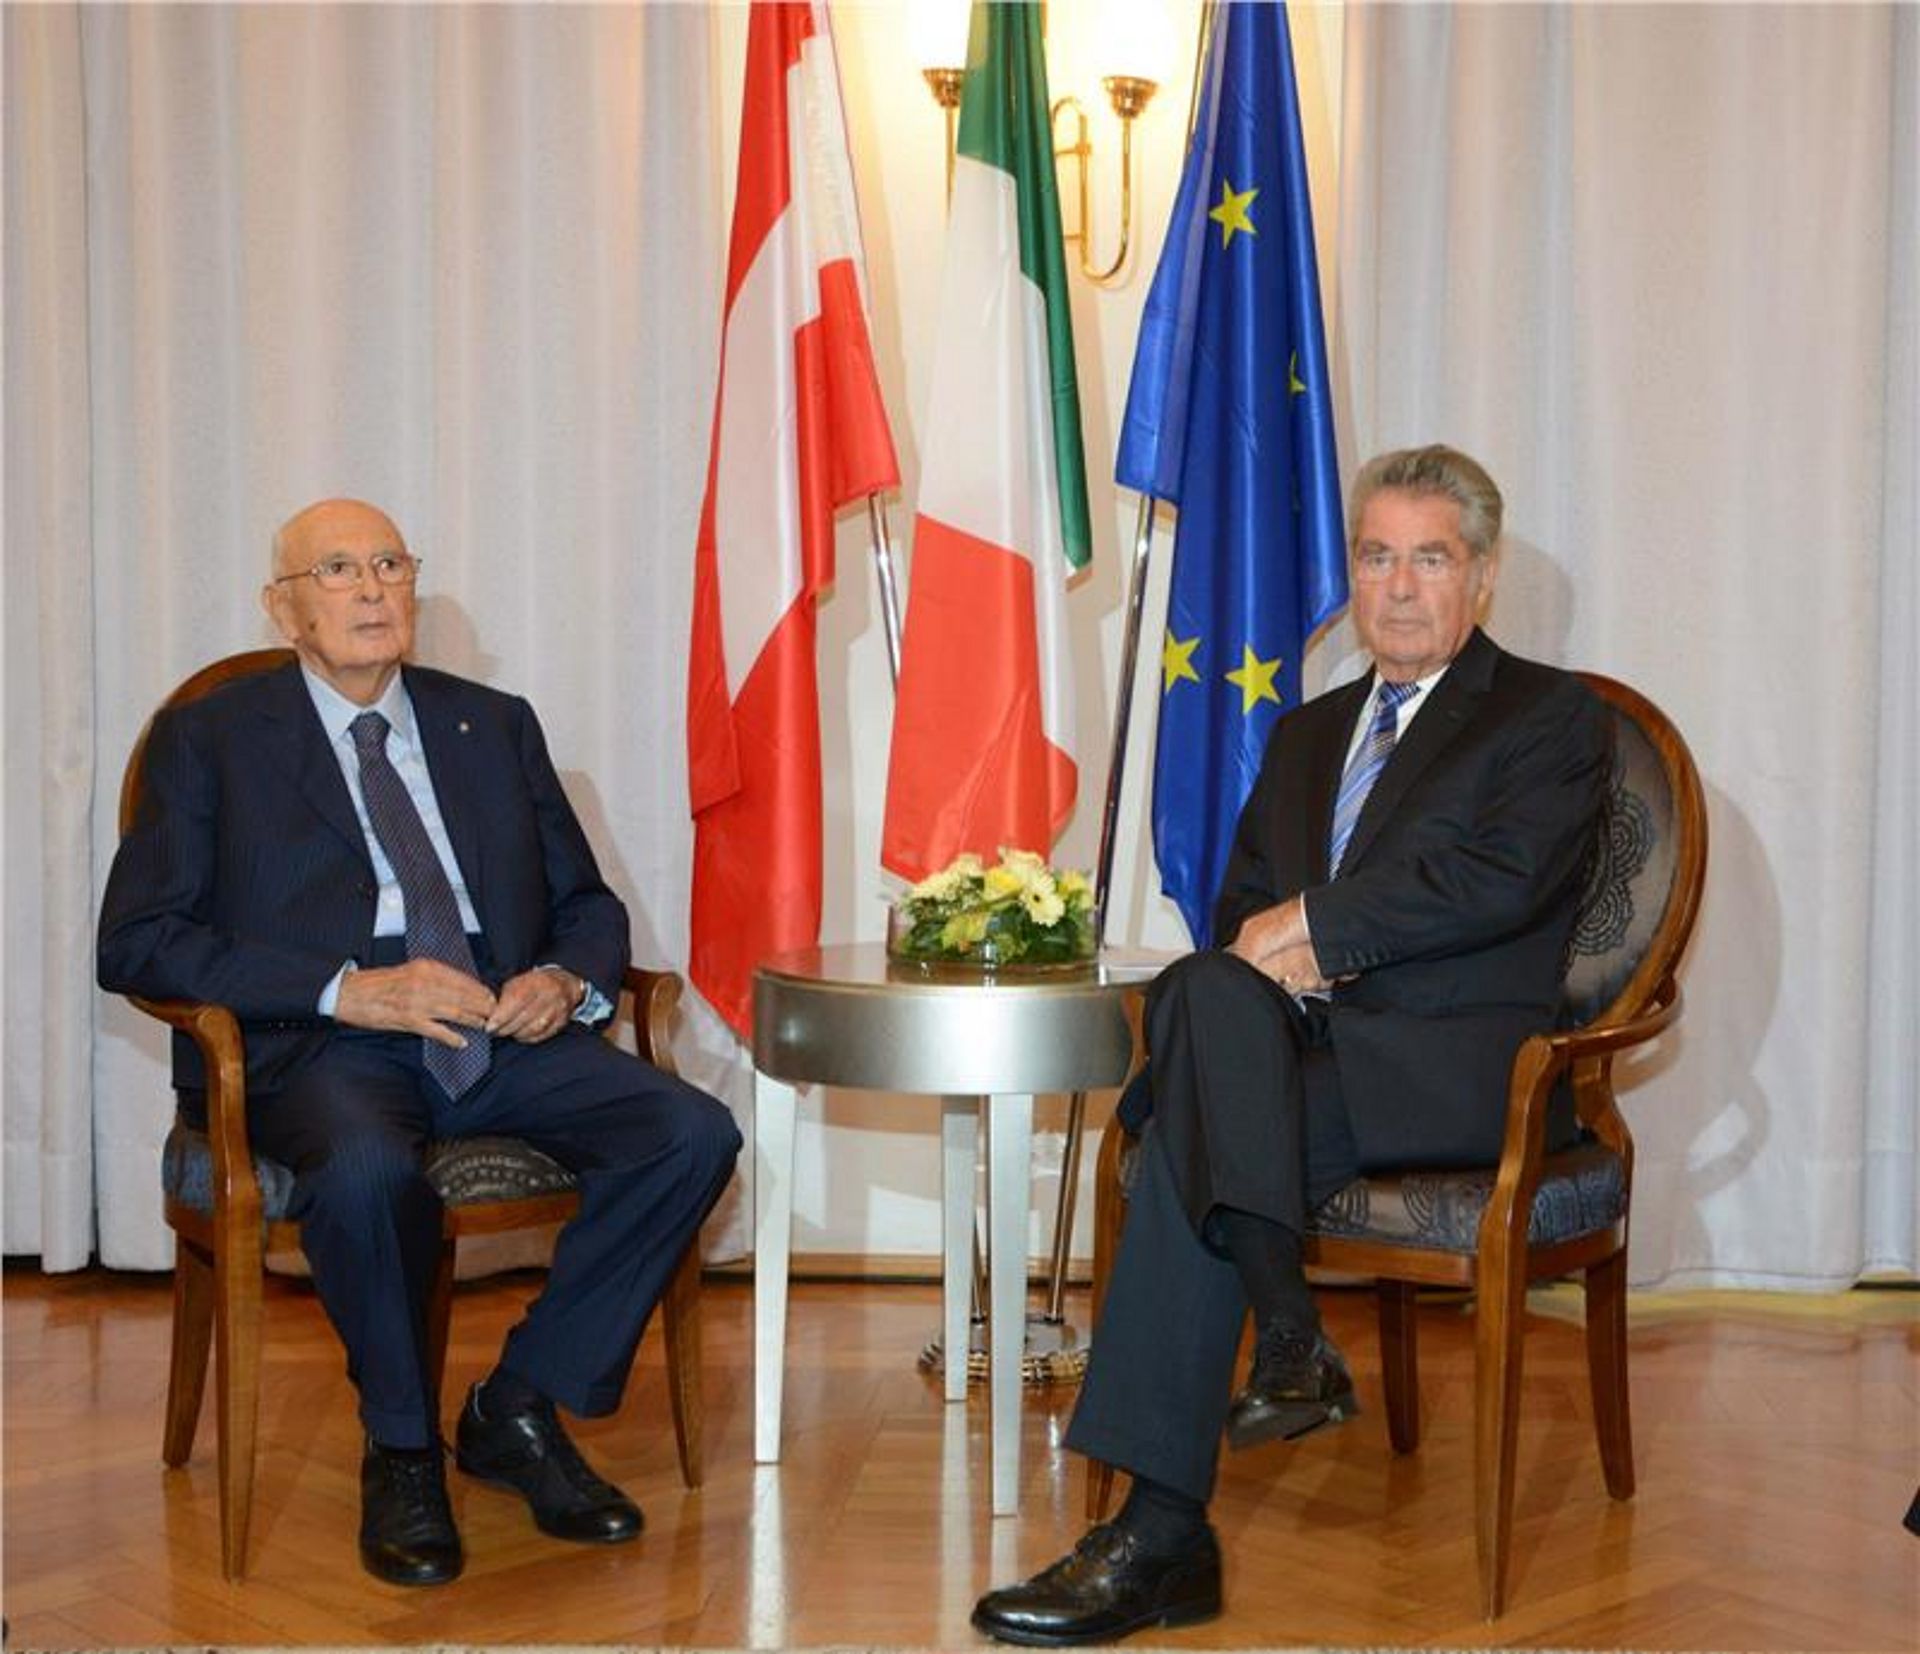 Conferenza celebrativa “70 anni dall’Accordo di Parigi” a Castel Firmiano con gli ex Capi di Stato Giorgio Napolitano e Heinz Fischer.